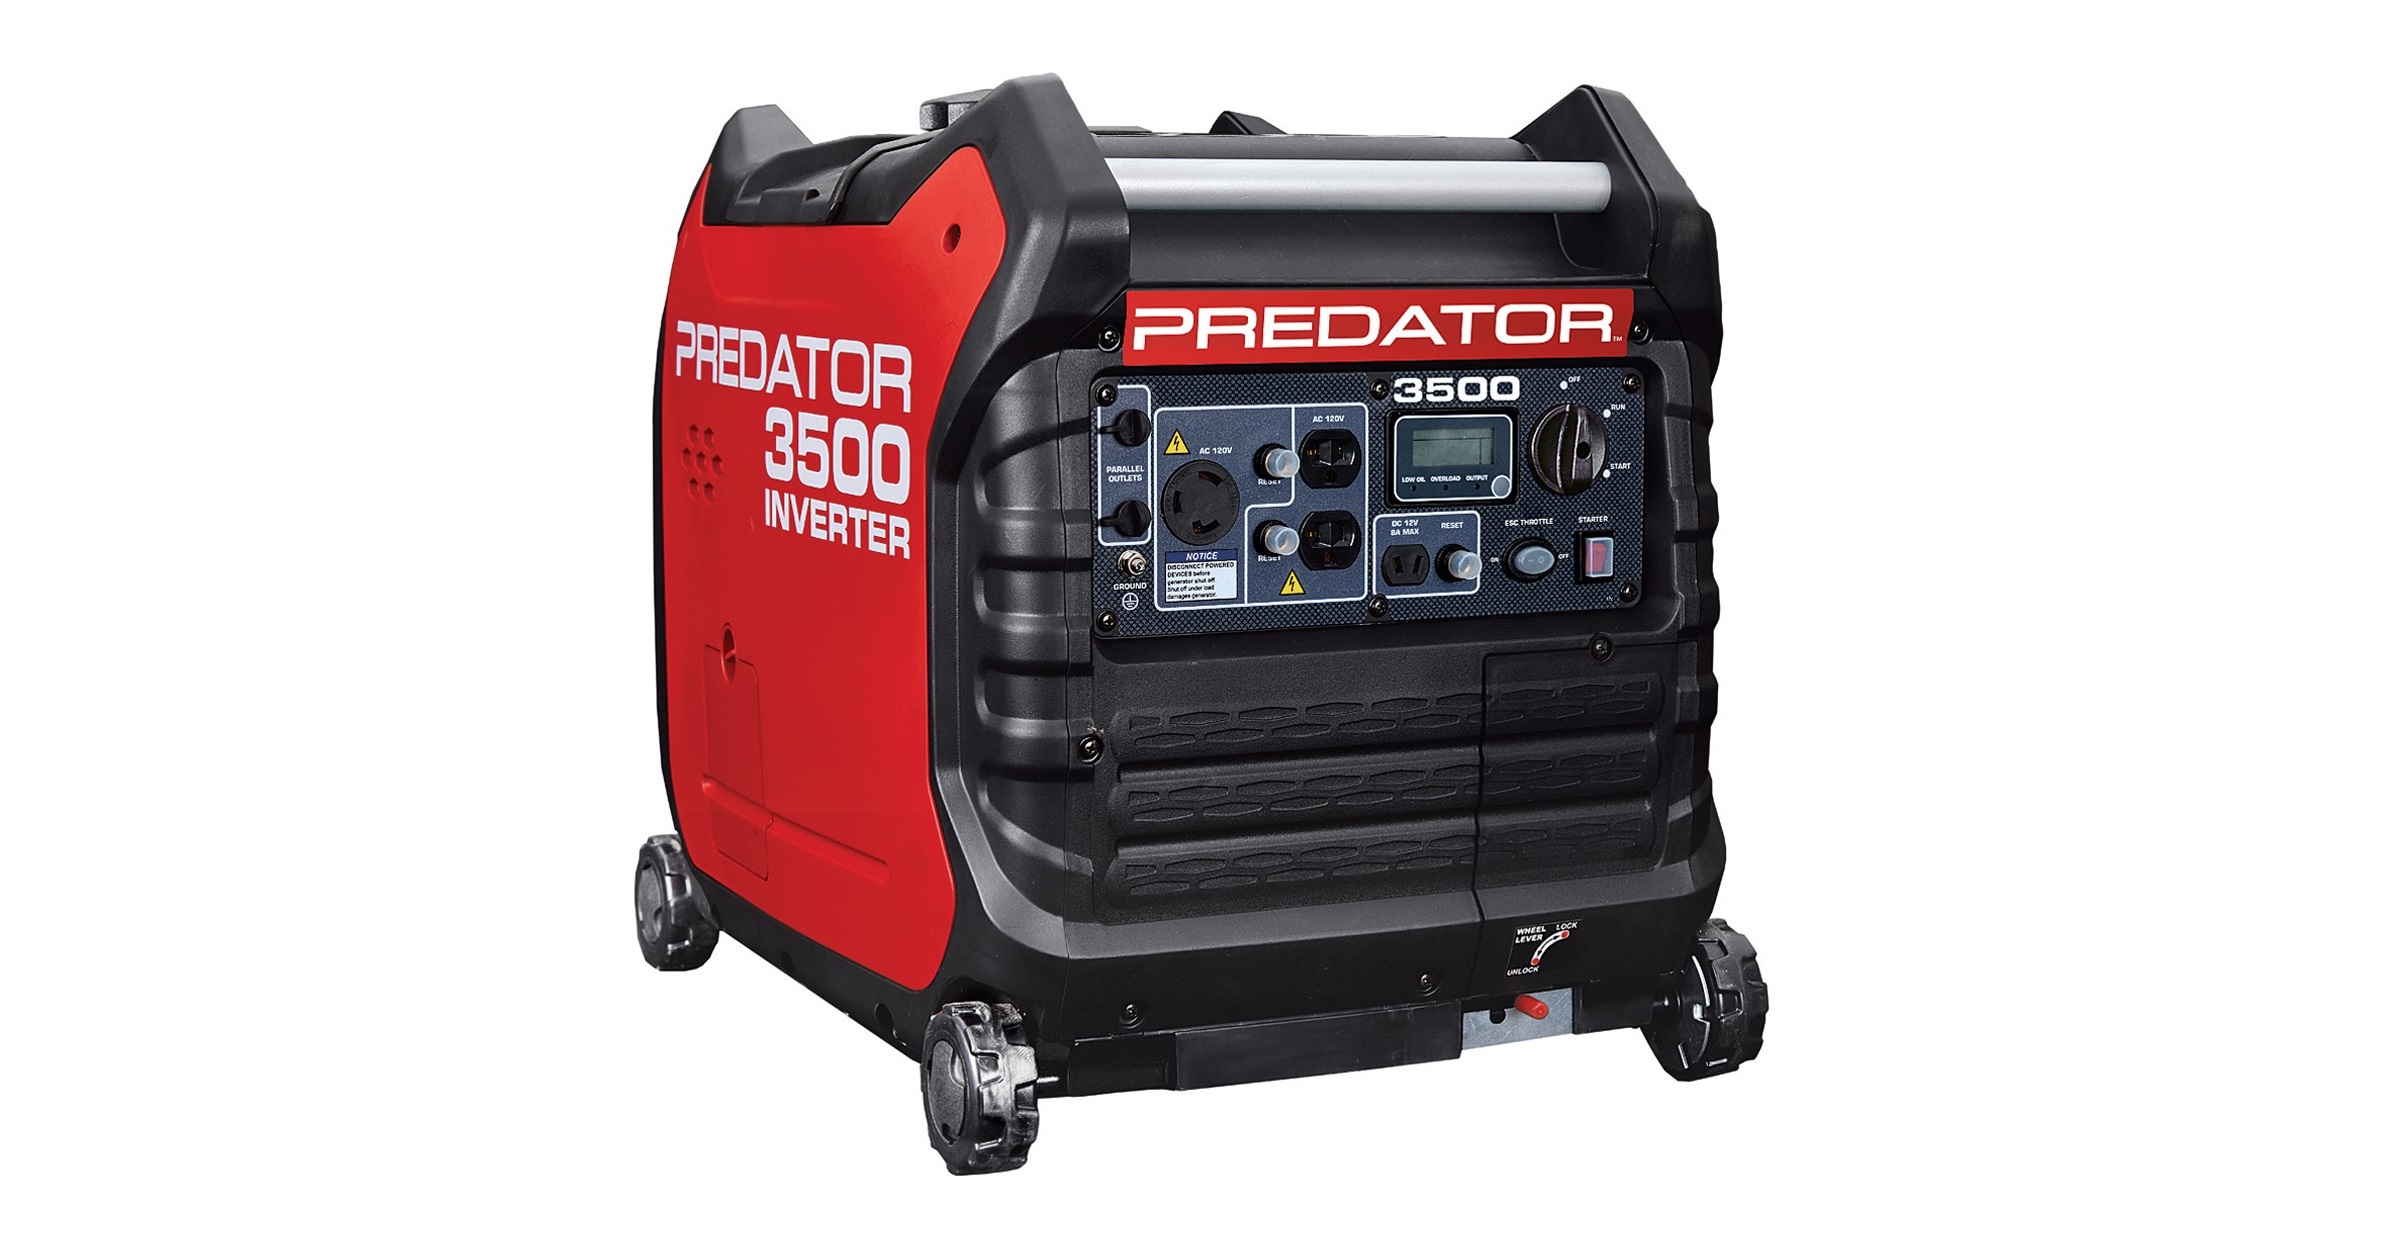 Buy Our Super Quiet Predator Generator for $697.98 through Sunday 8/25